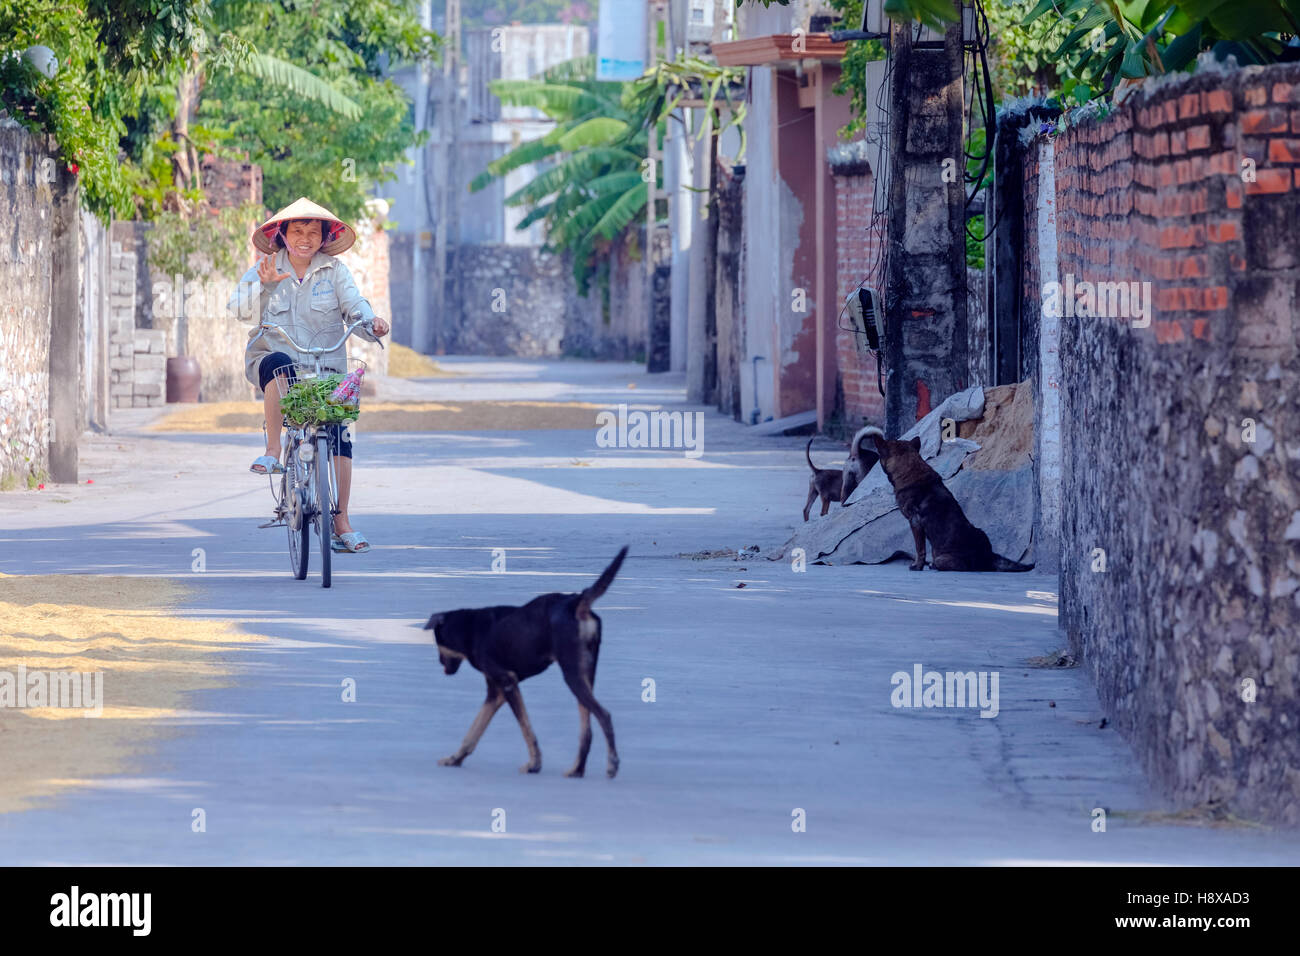 La vie rurale dans un village près de Hanoi, Vietnam, Asie Banque D'Images